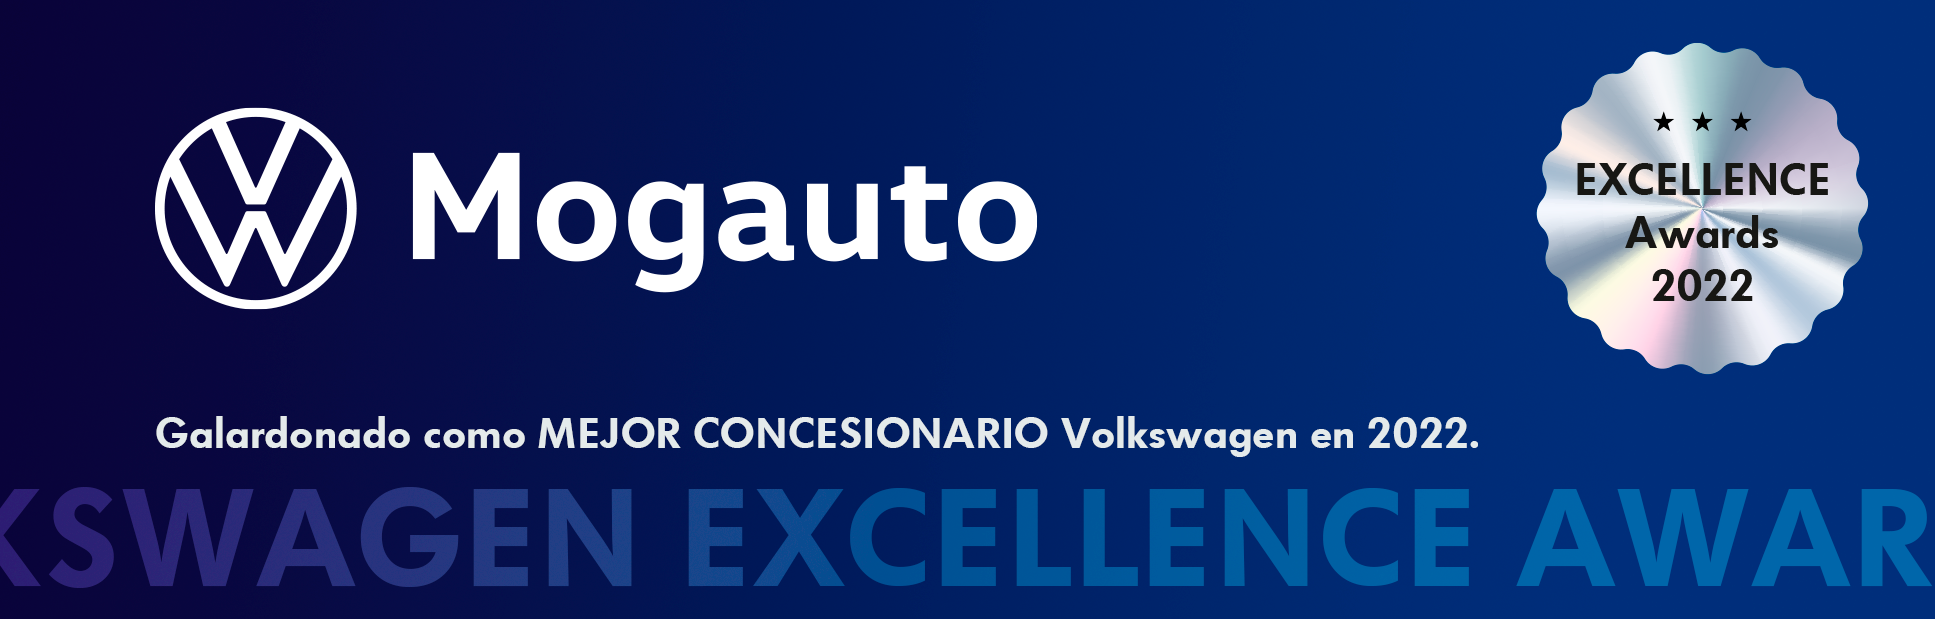 Volkswagen Mogauto, premiado como mejor concesionario Volkswagen en España en 2022